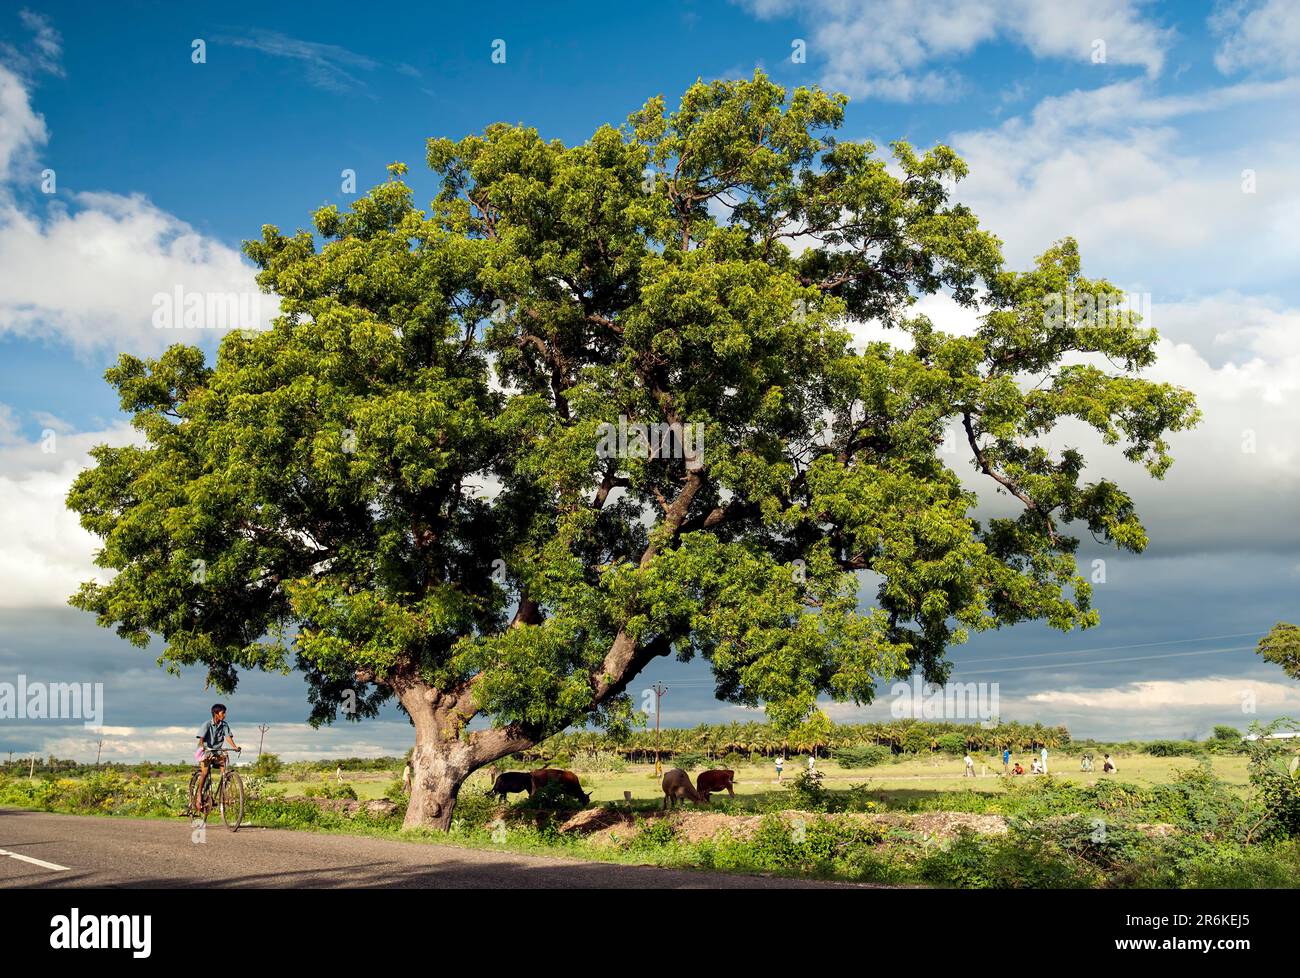 Albero di Neem (Azadirachta indica a. juss) (linea di Melia azadirachta) su un lato della strada del villaggio Tamil Nadu, India del sud, India, Asia Foto Stock